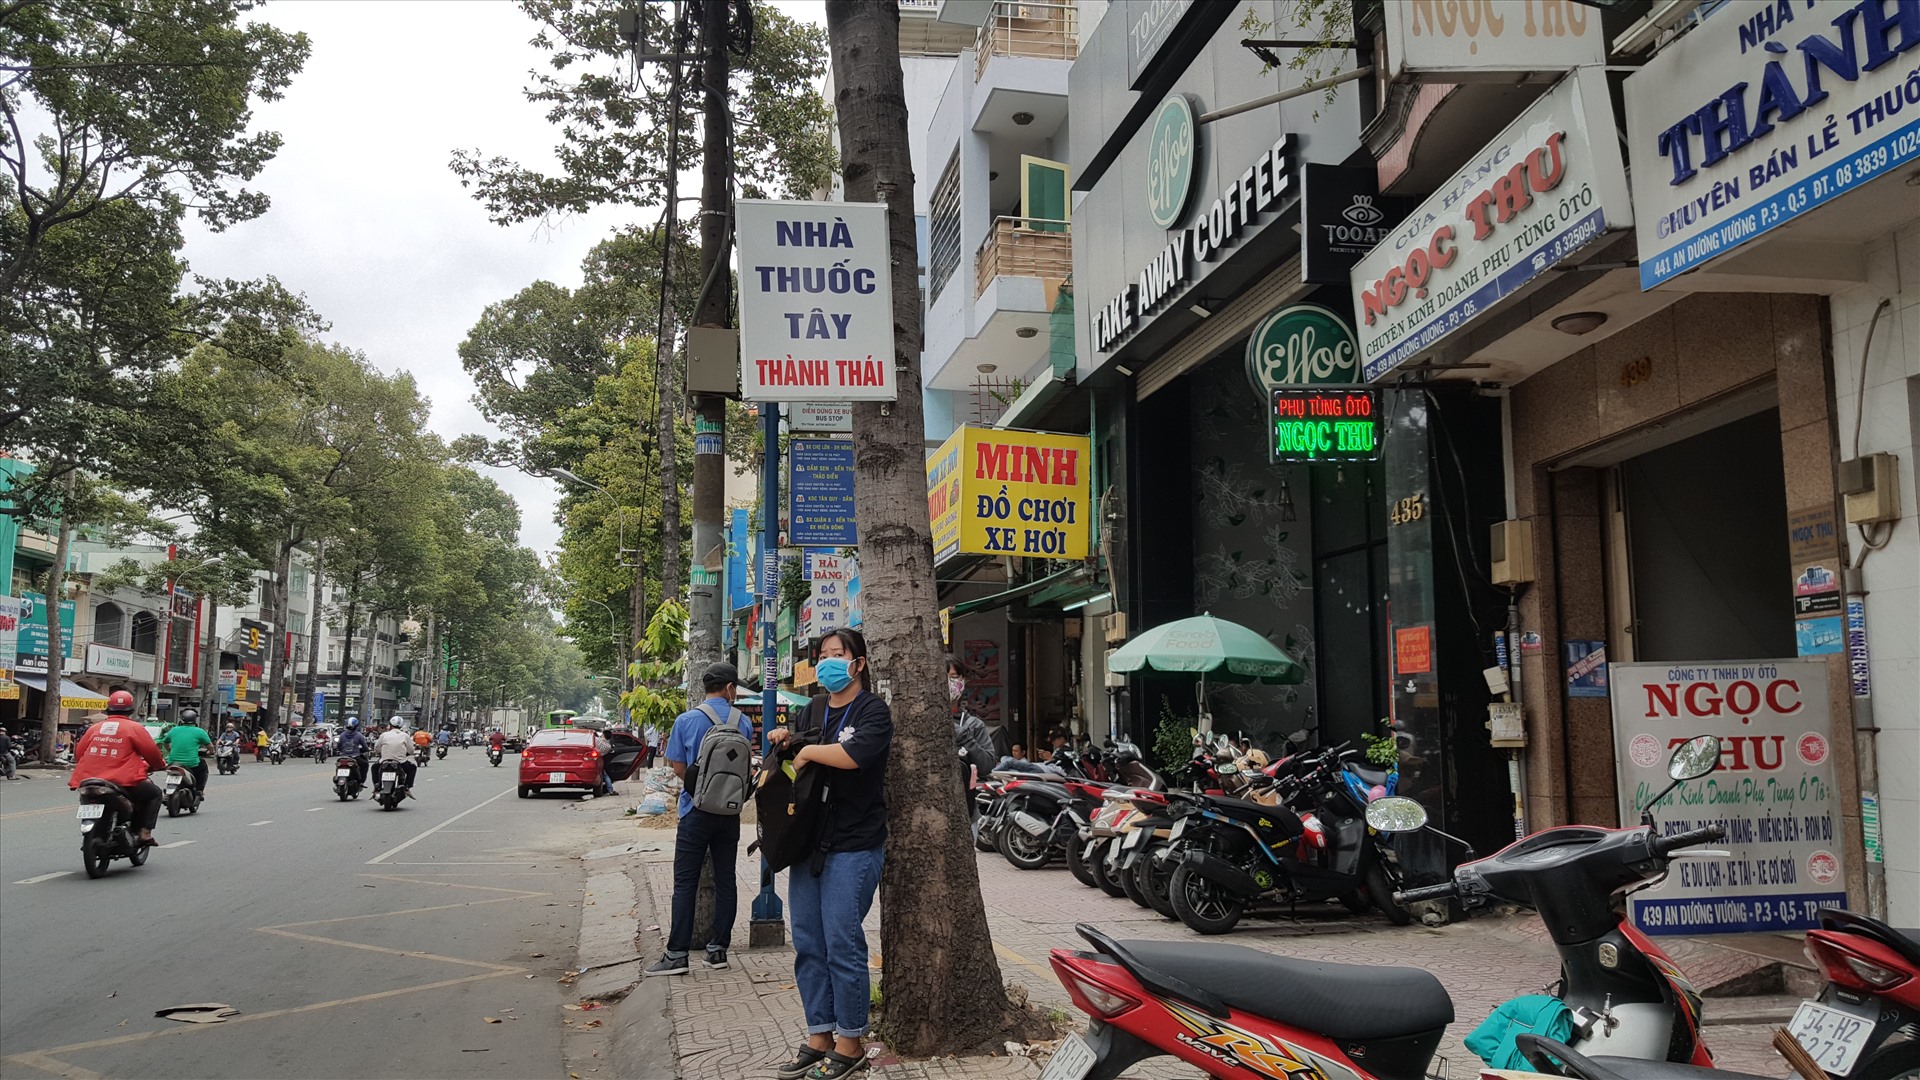 Một nhà thuốc tây tận dụng cây xanh để đóng bảng hiệu. Ảnh ghi nhận tại đường An Dương Vương (quận 5, TPHCM).